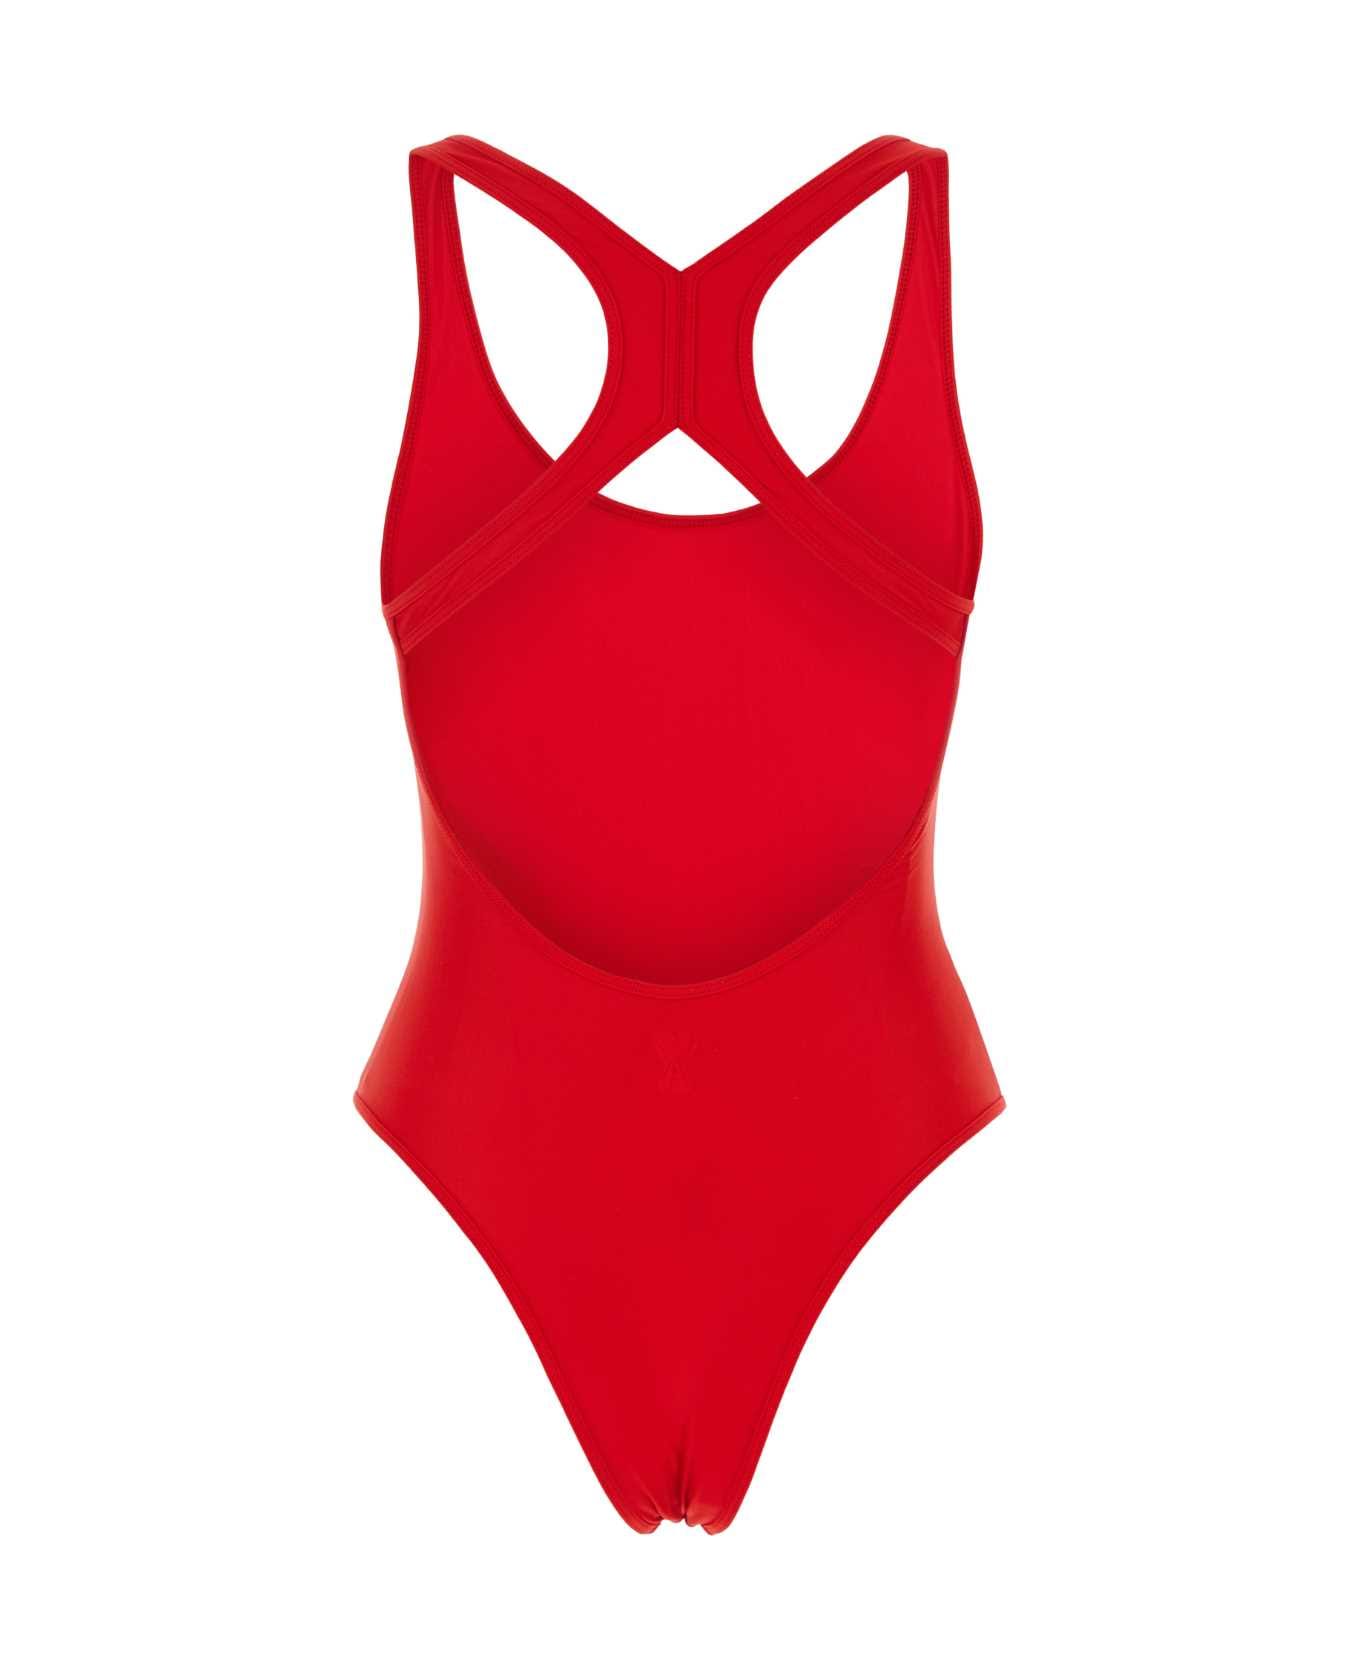 Ami Alexandre Mattiussi Red Stretch Nylon Swimsuit - 681